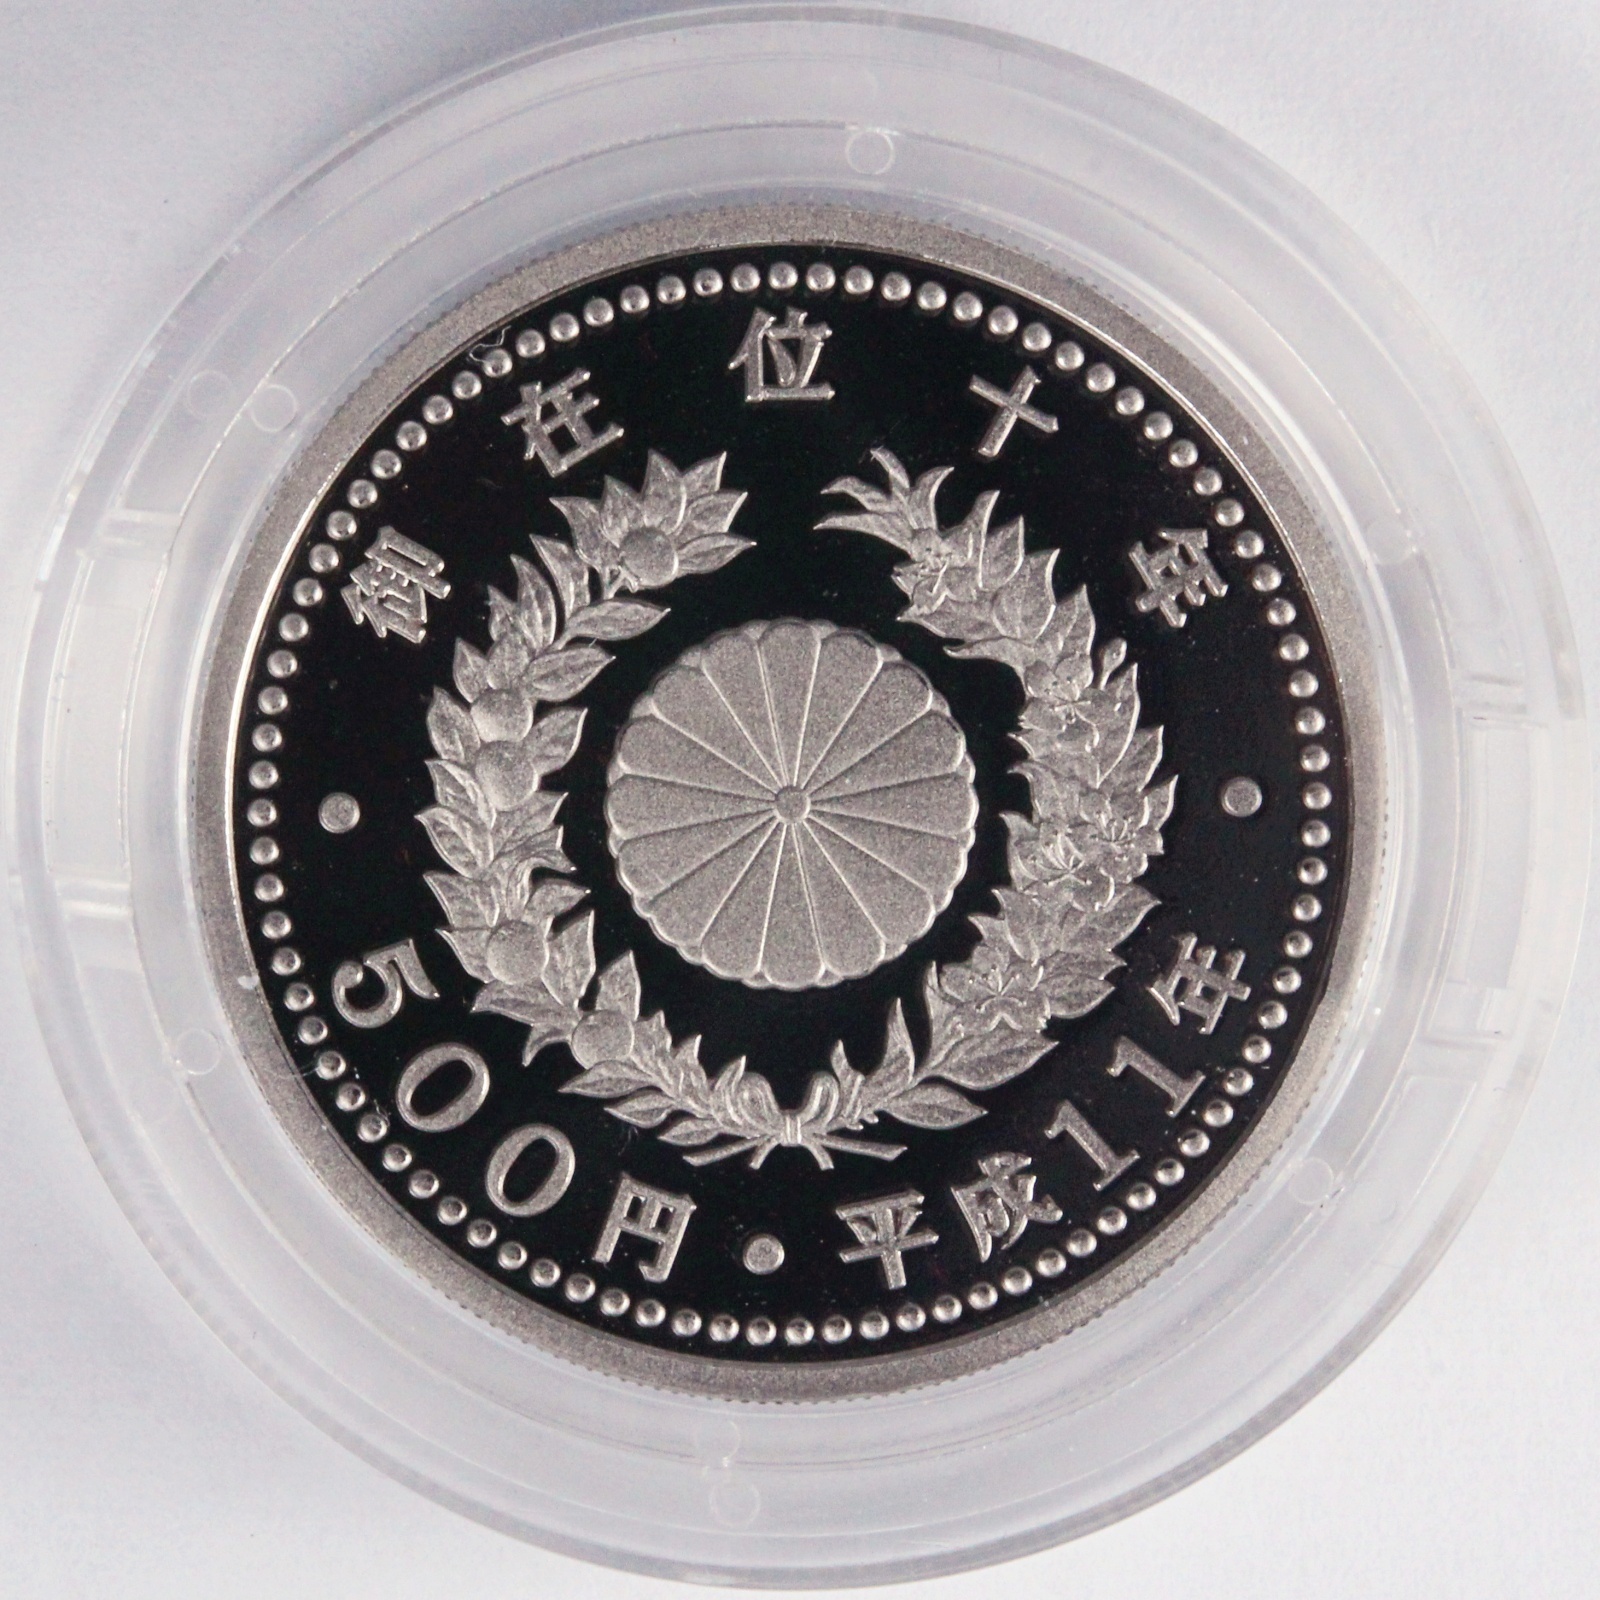 天皇陛下御在位十年記念 1万円金貨幣・500円白銅貨幣 プルーフ貨幣 